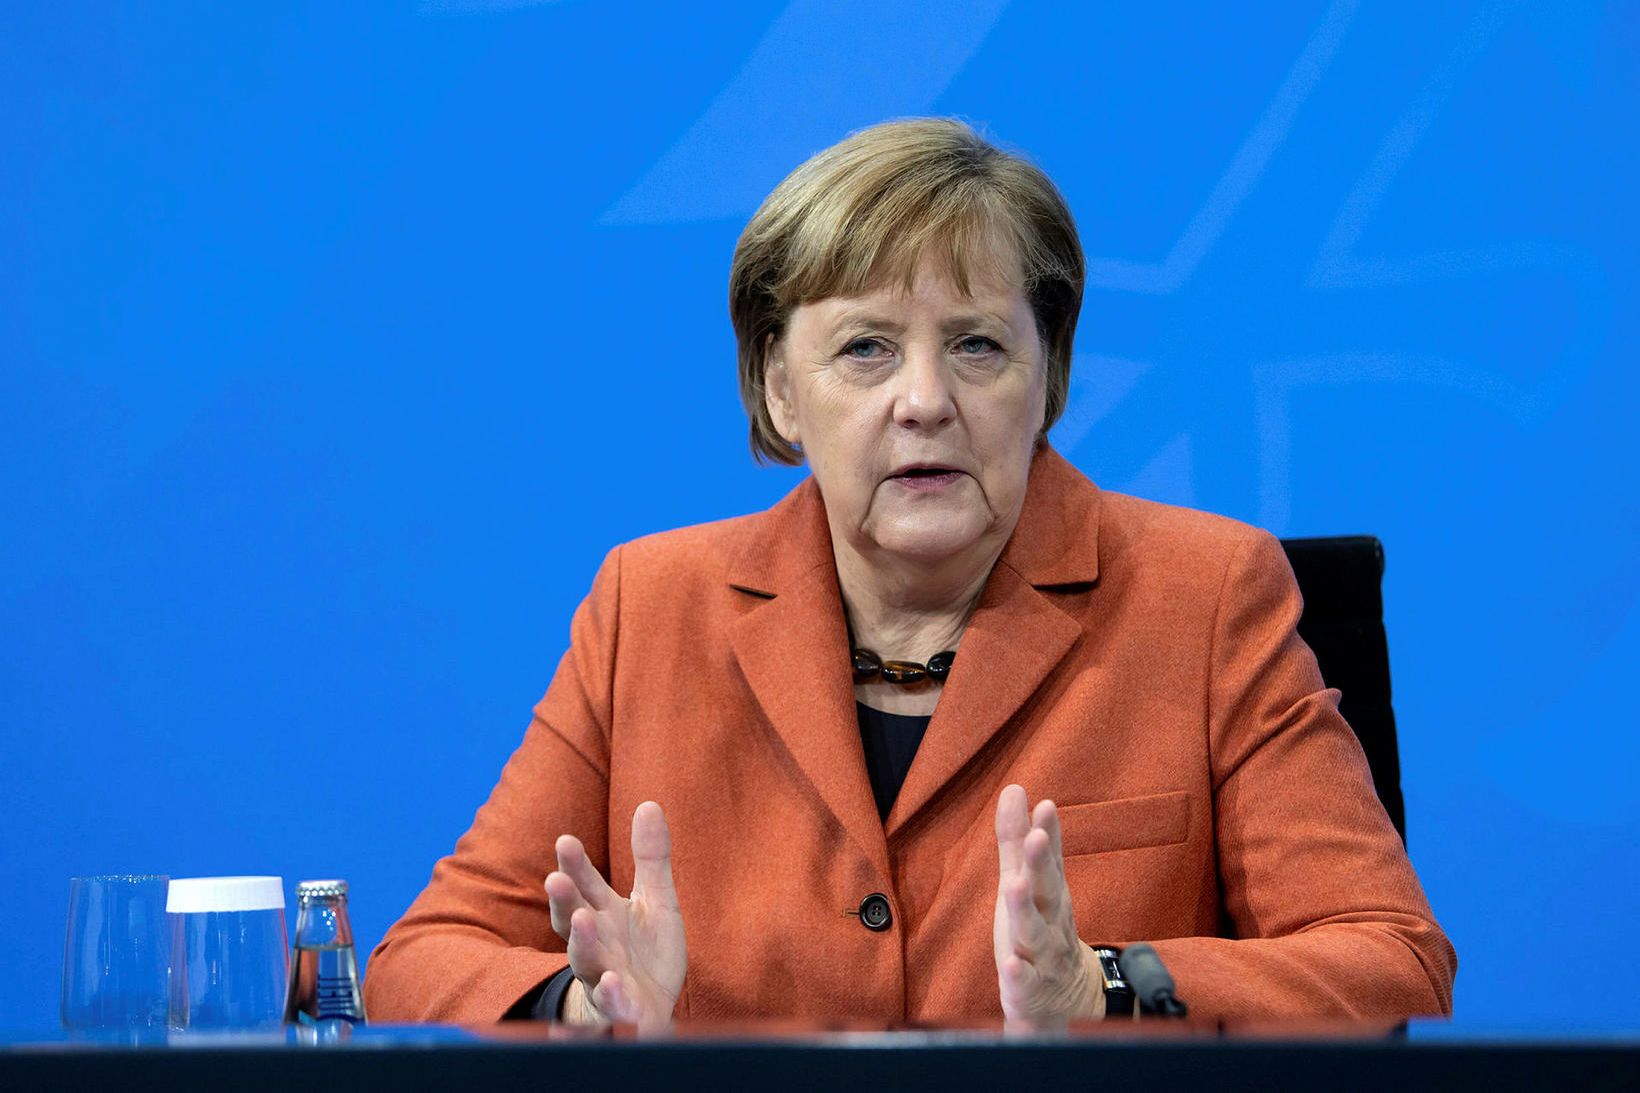 Angela Merkel, kanslari Þýskalands, telur þróunina óheillavænlega.